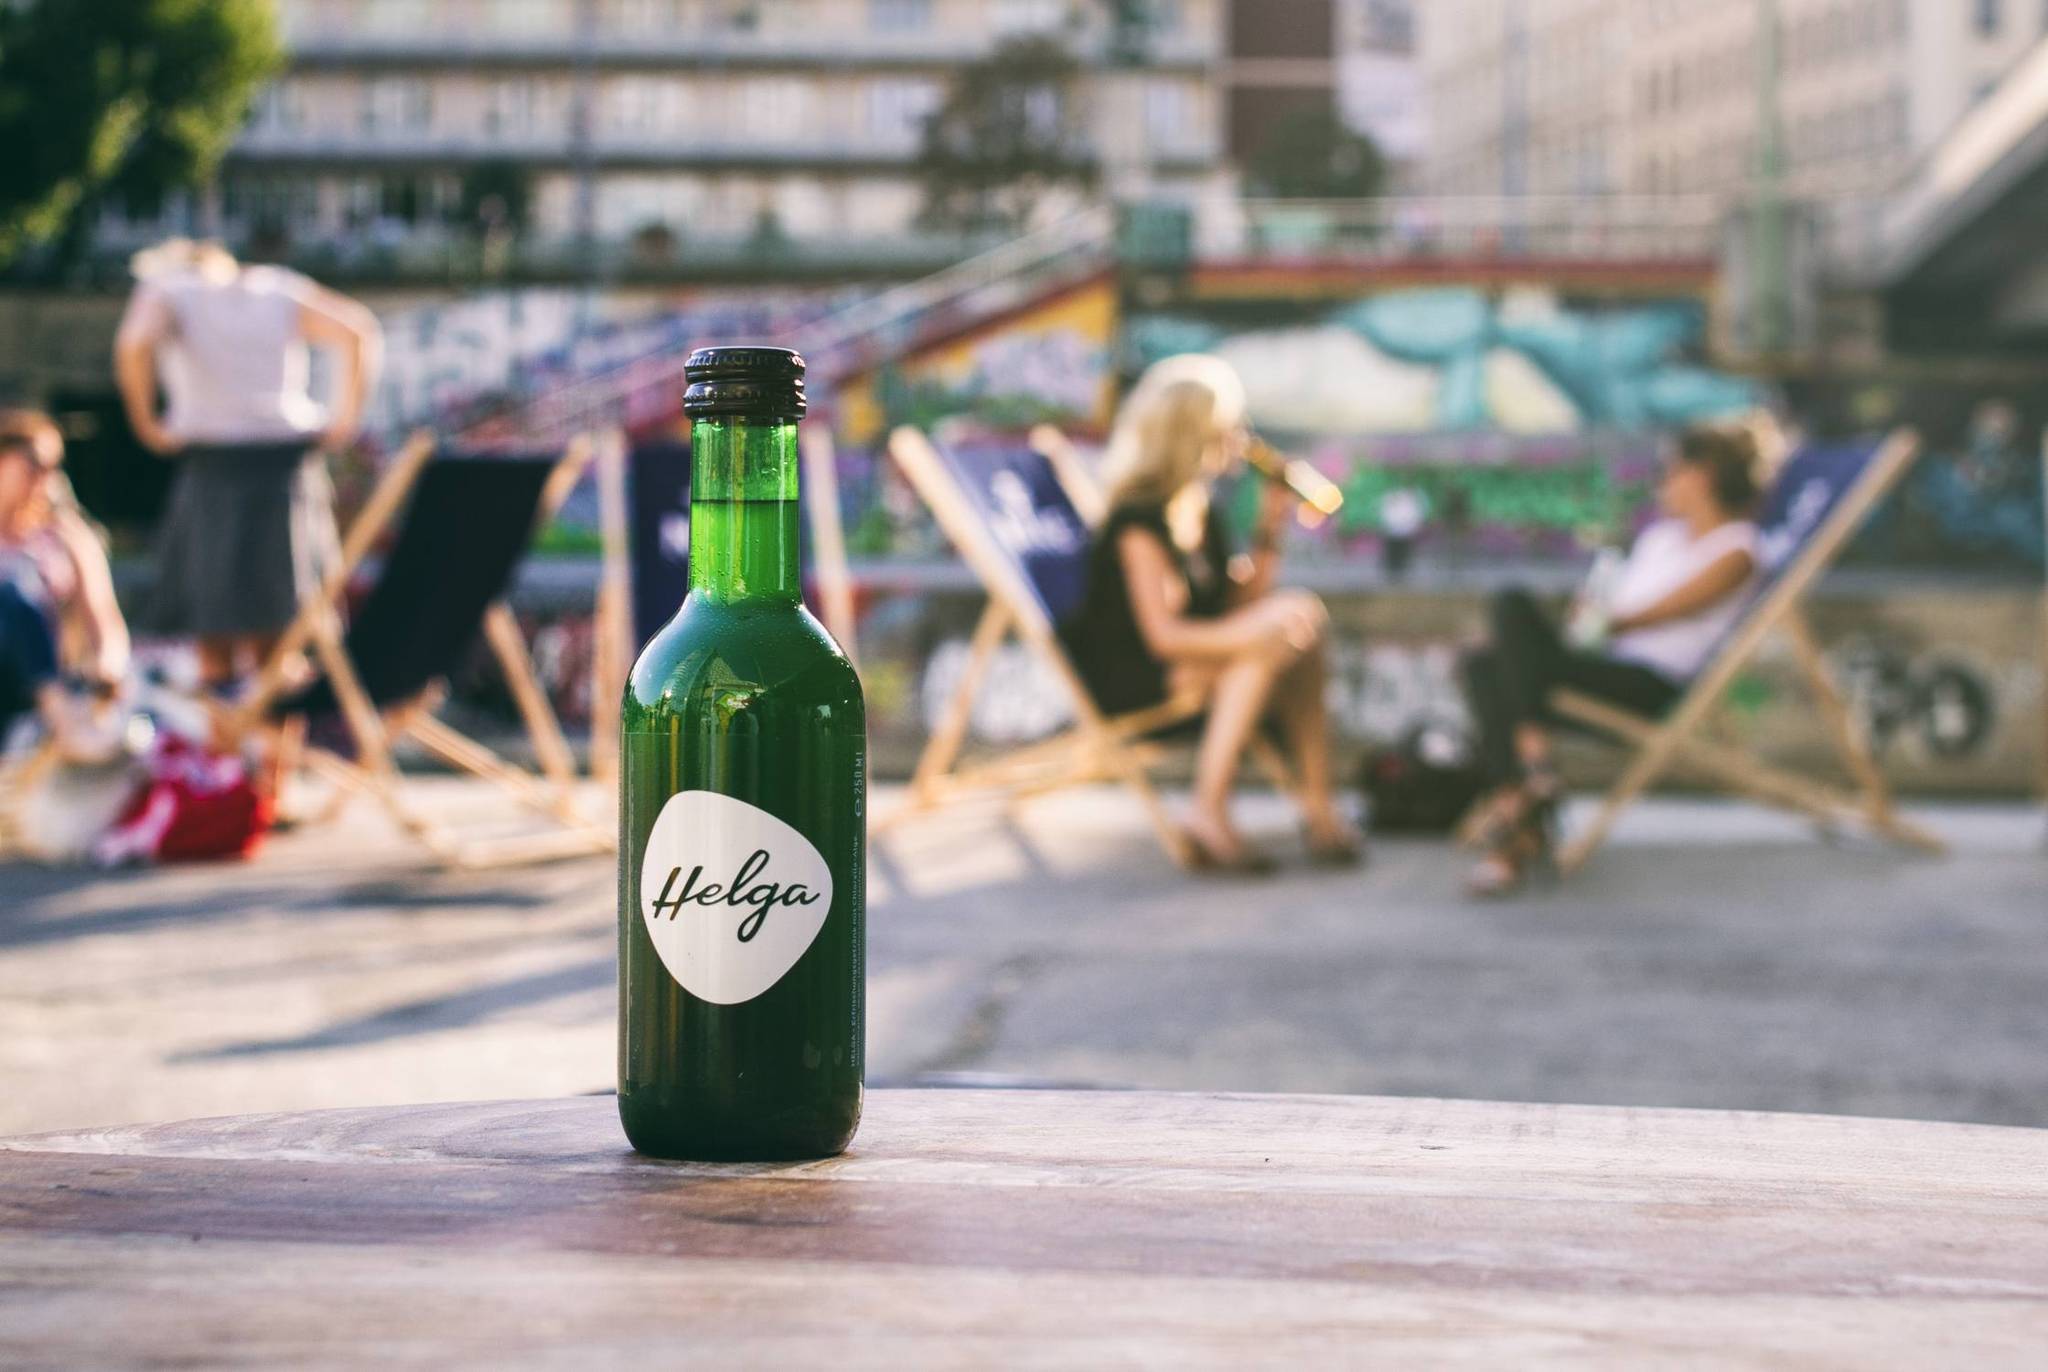 Algae drink offers a healthy soda alternative